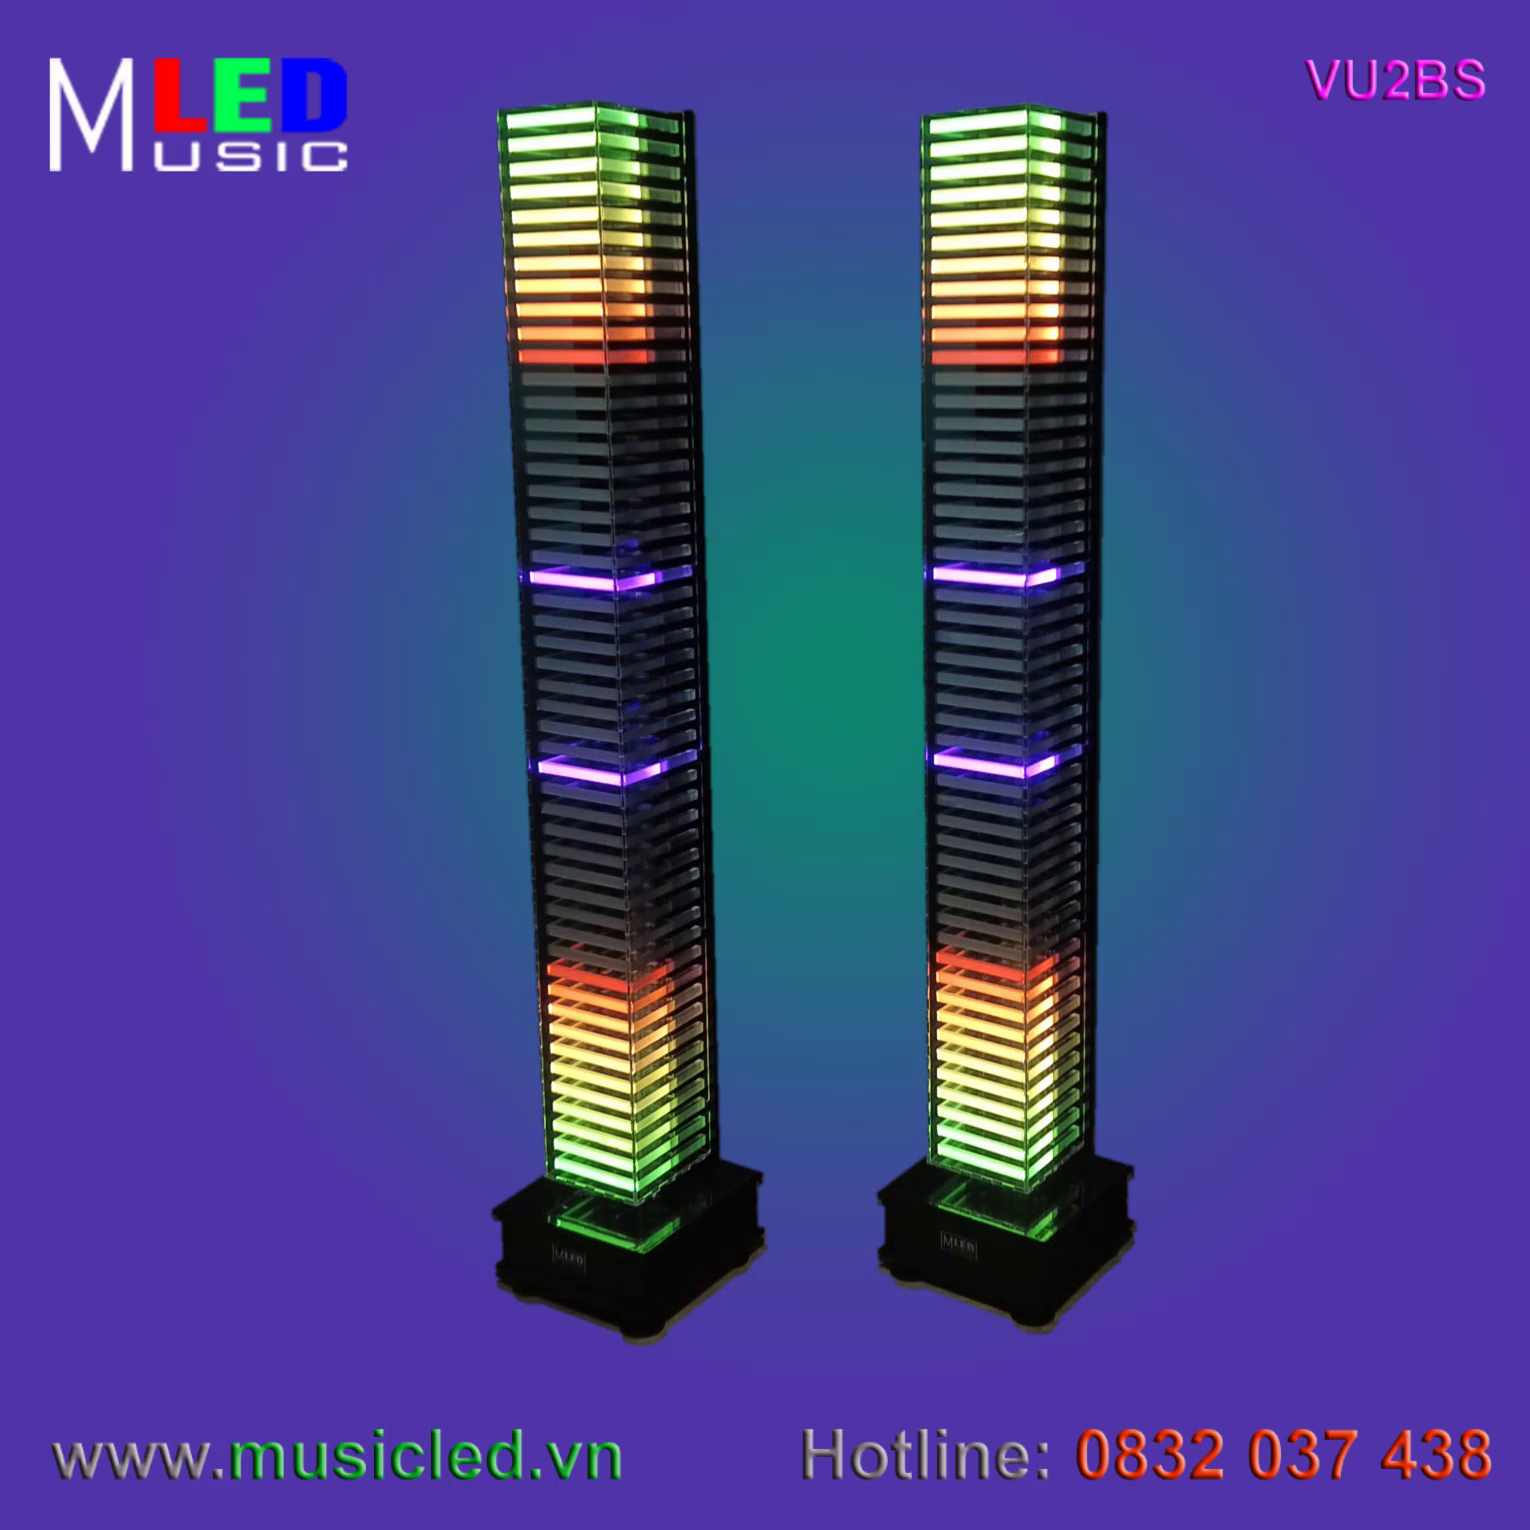 Đôi đèn Music LED nháy theo âm lượng nhạc cỡ lớn (VU2BS)